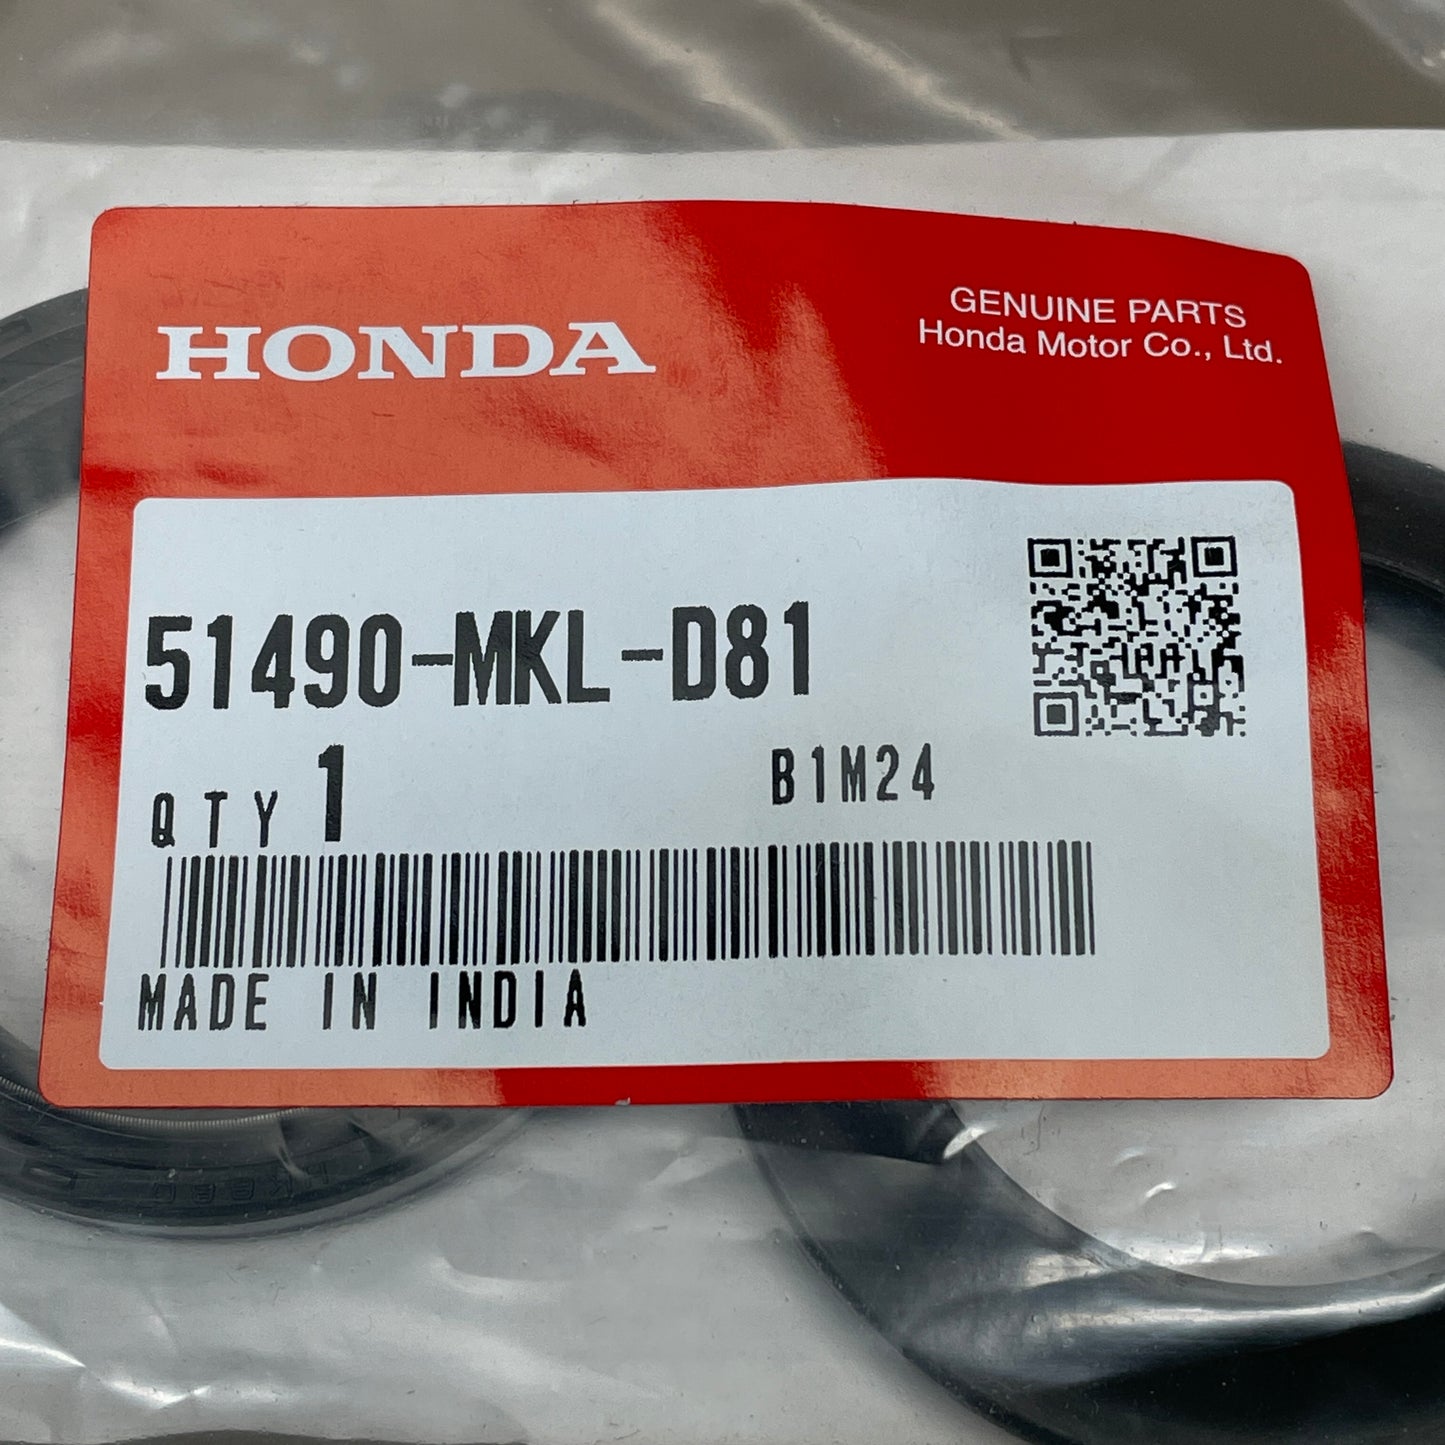 HONDA '18 Front Fork Seal Set CB500/CBR500 CB650/CBR650 NC750X 51490-MKL-D81 OEM (New)